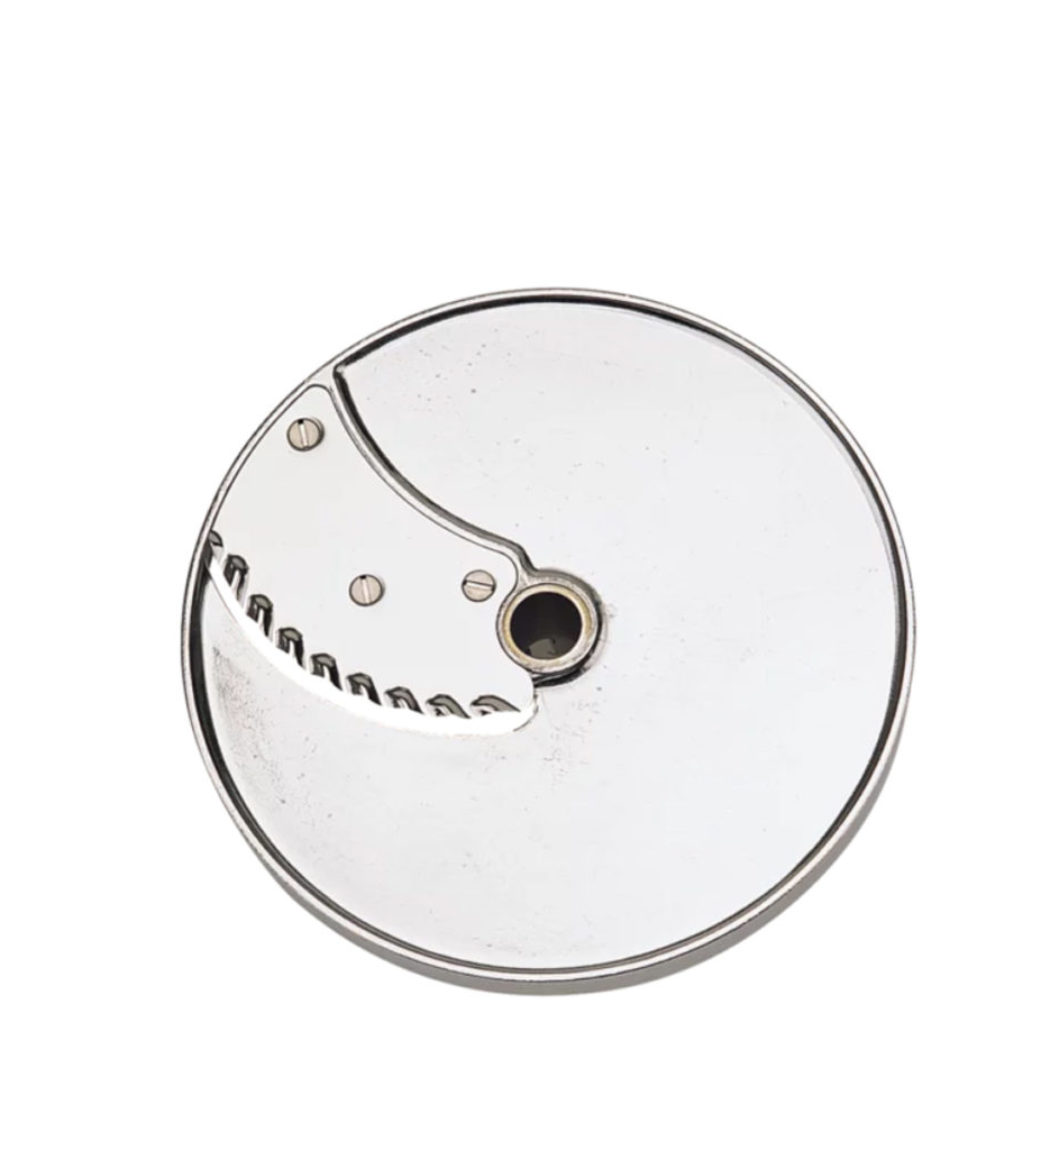 Vlnkovač 5 mm | Robot Coupe disk